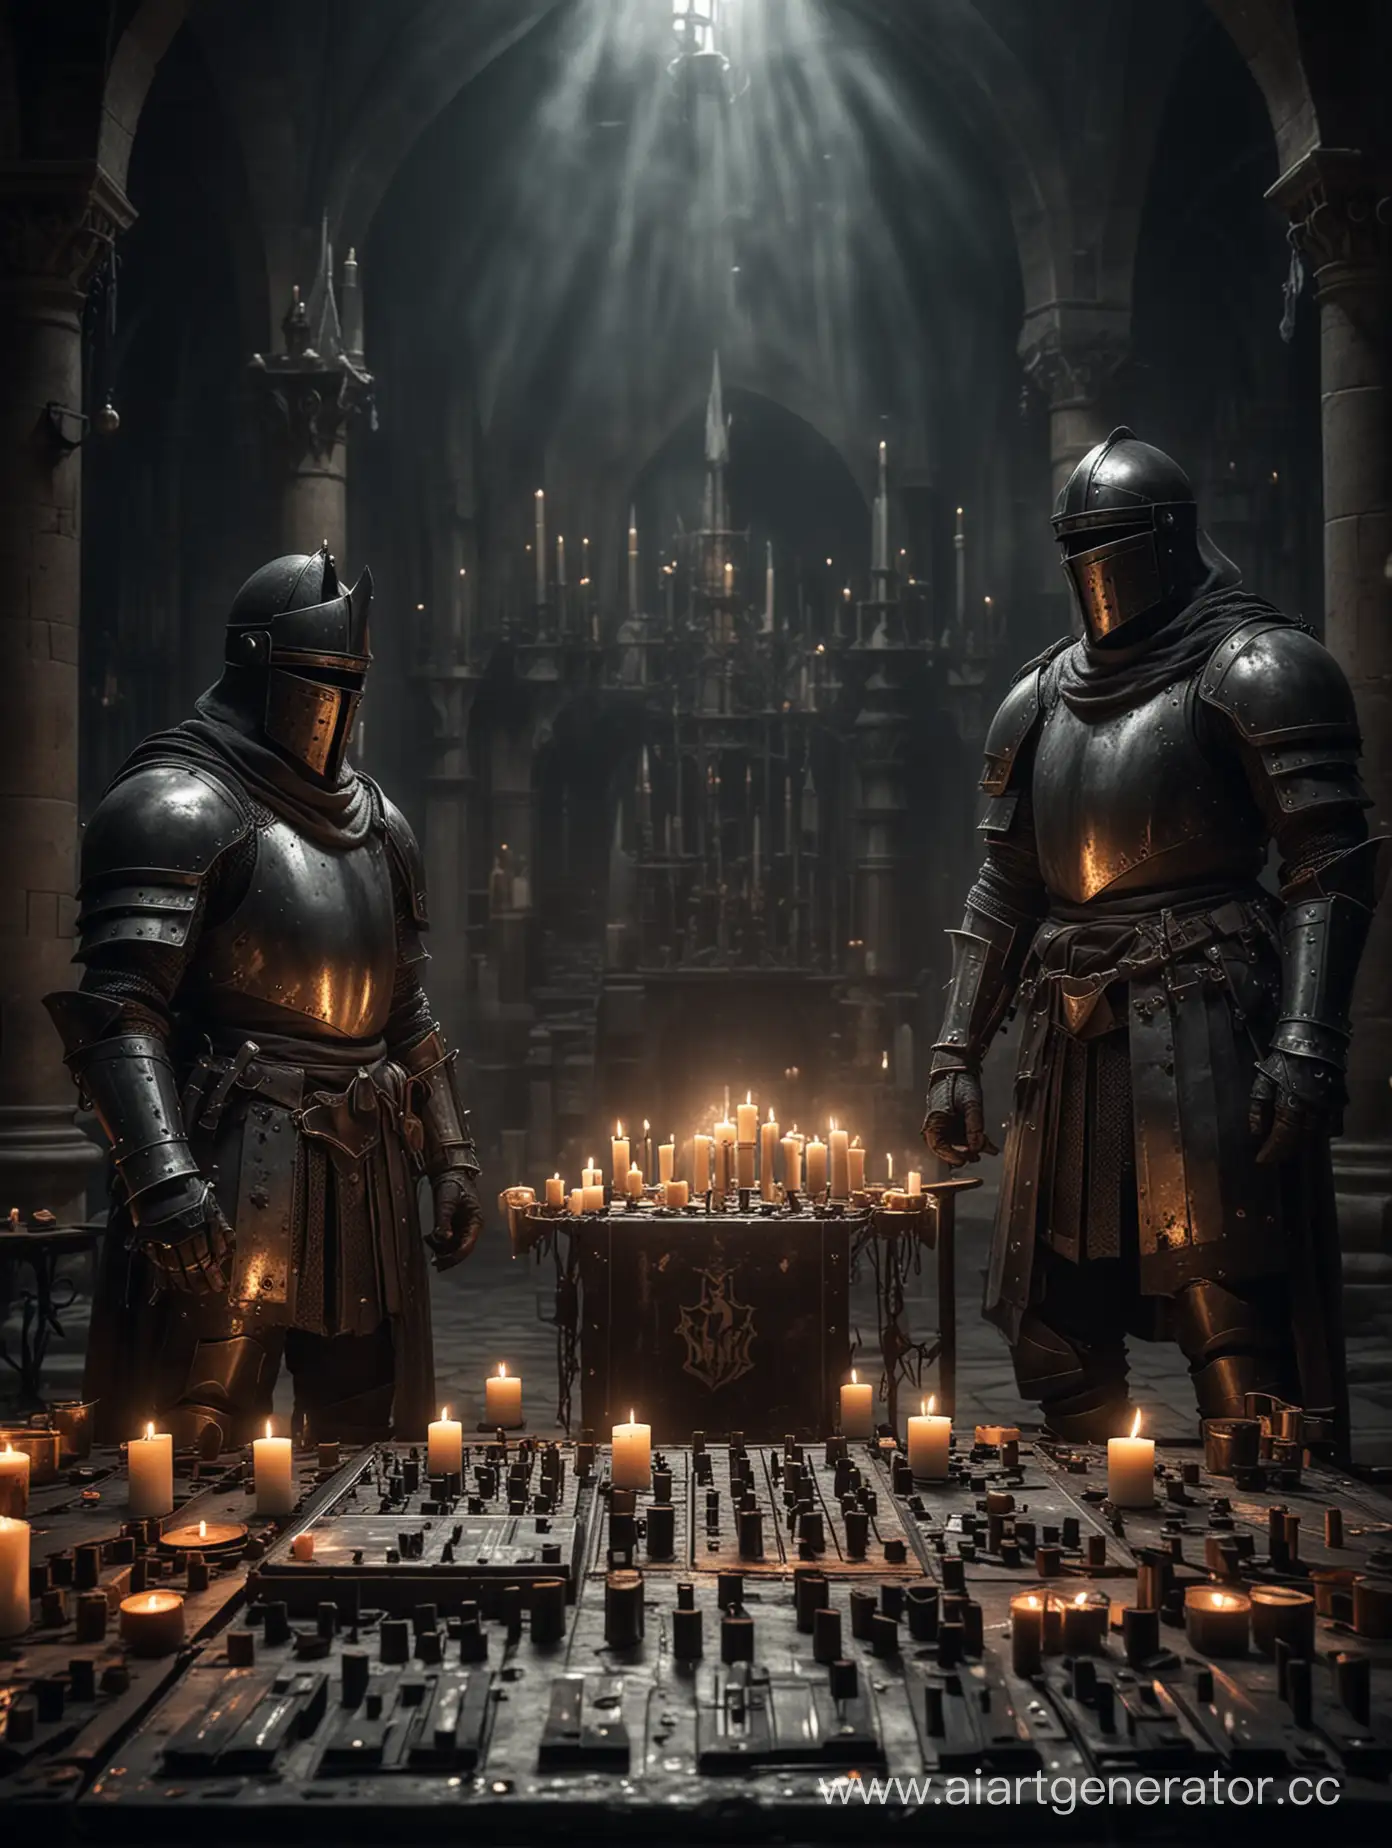 два рыцаря в темном замке,везде горят свечи , первый рыцарь стоит за диджейским пультом ,второй играет на барабане 